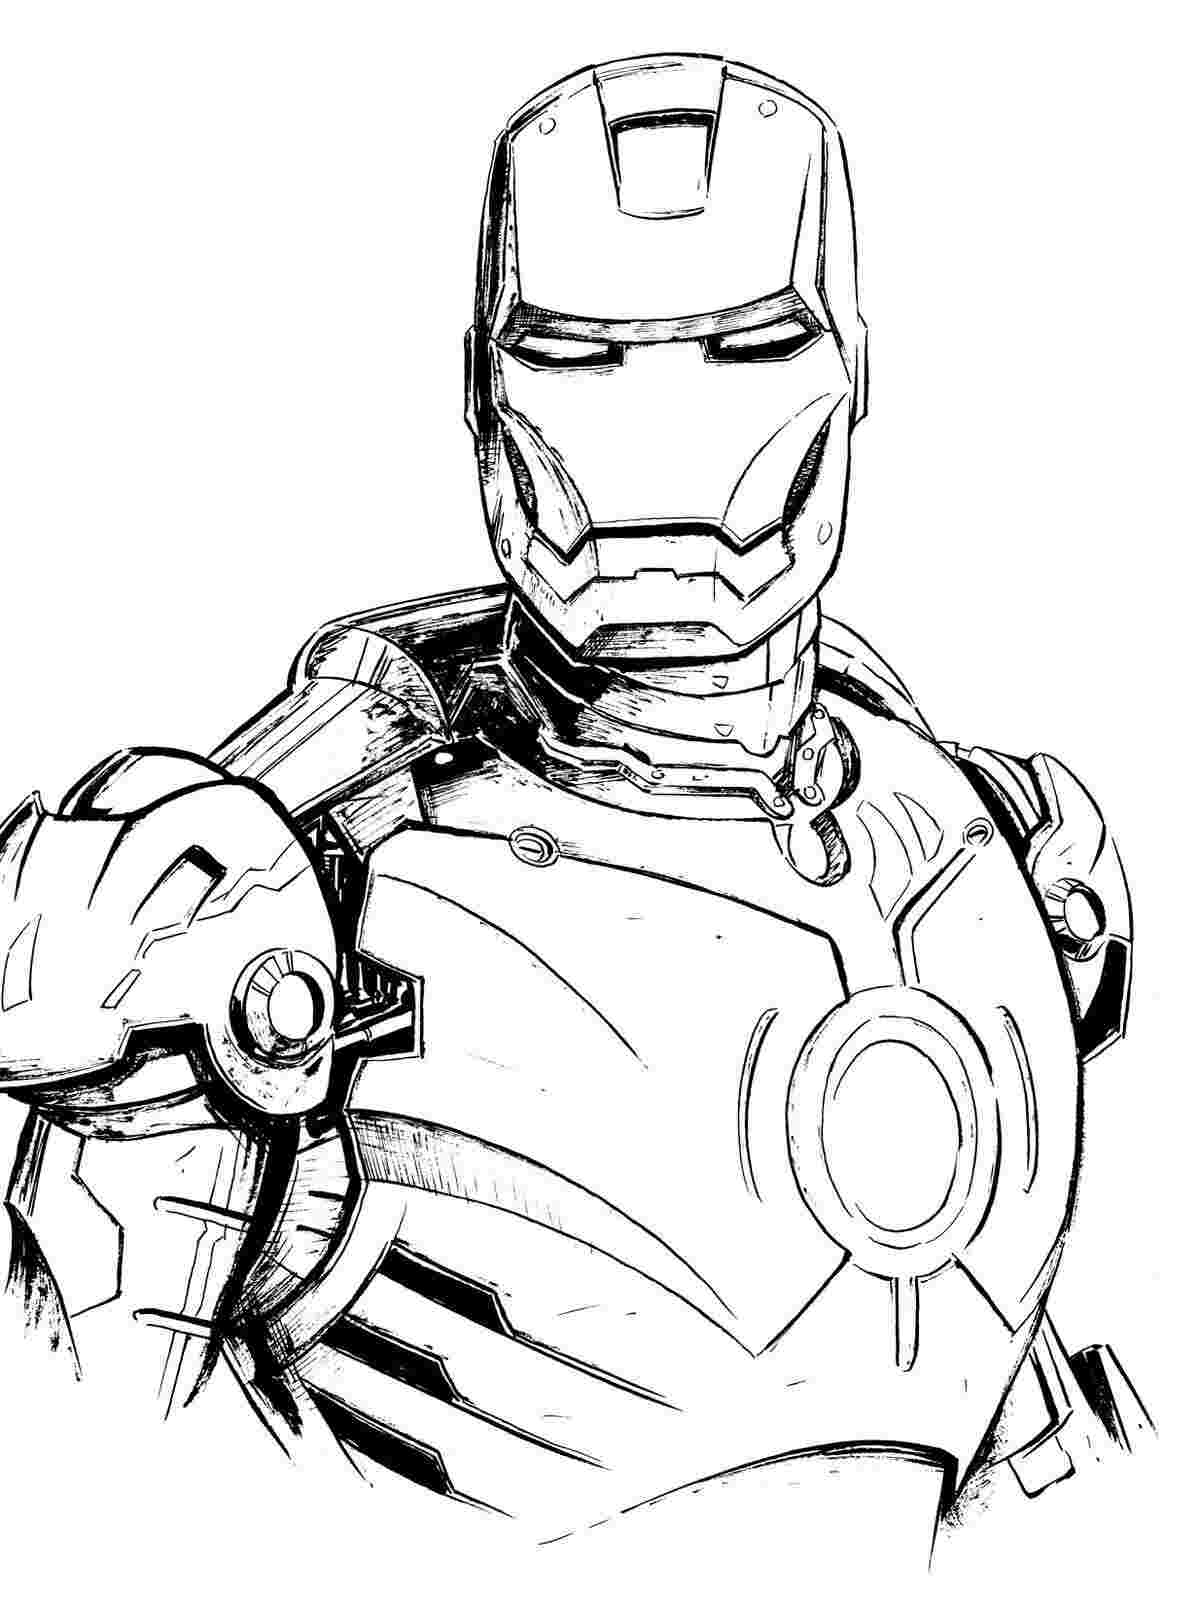 L'horrible armure d'Iron Man a un cercle puissant sur sa poitrine Coloriage